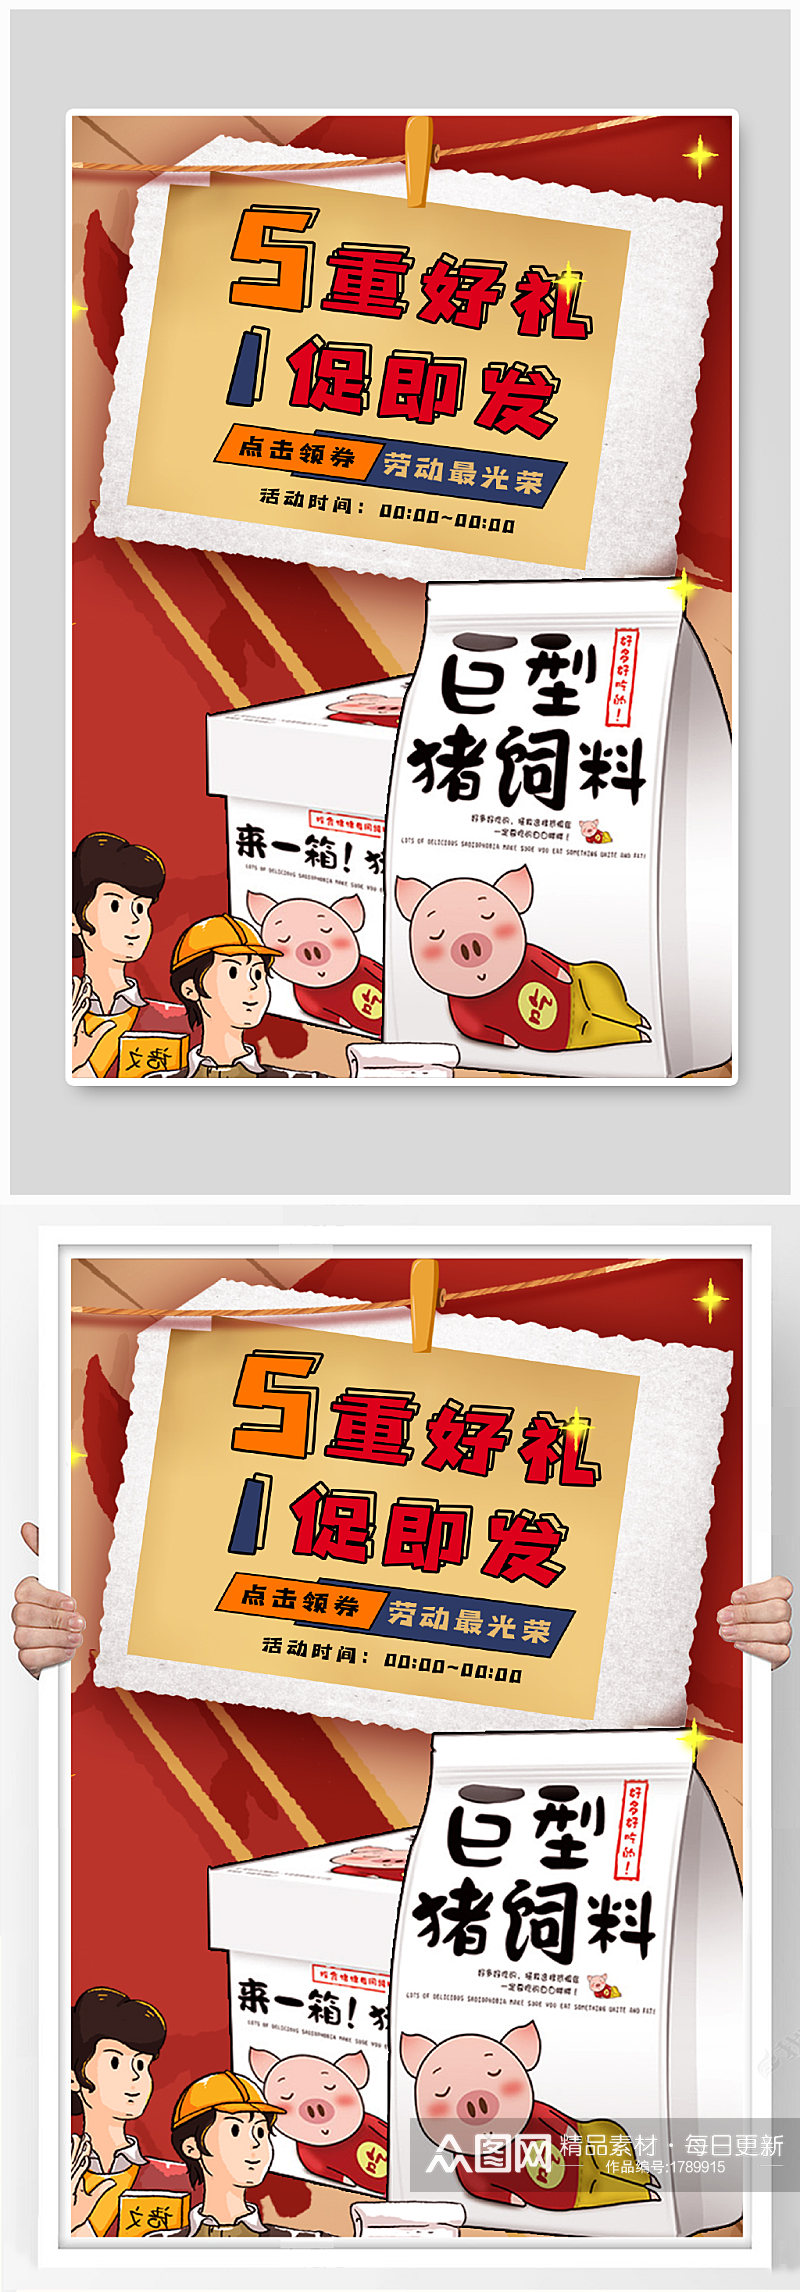 五一狂欢节简约红色美食零食海报促销模板素材